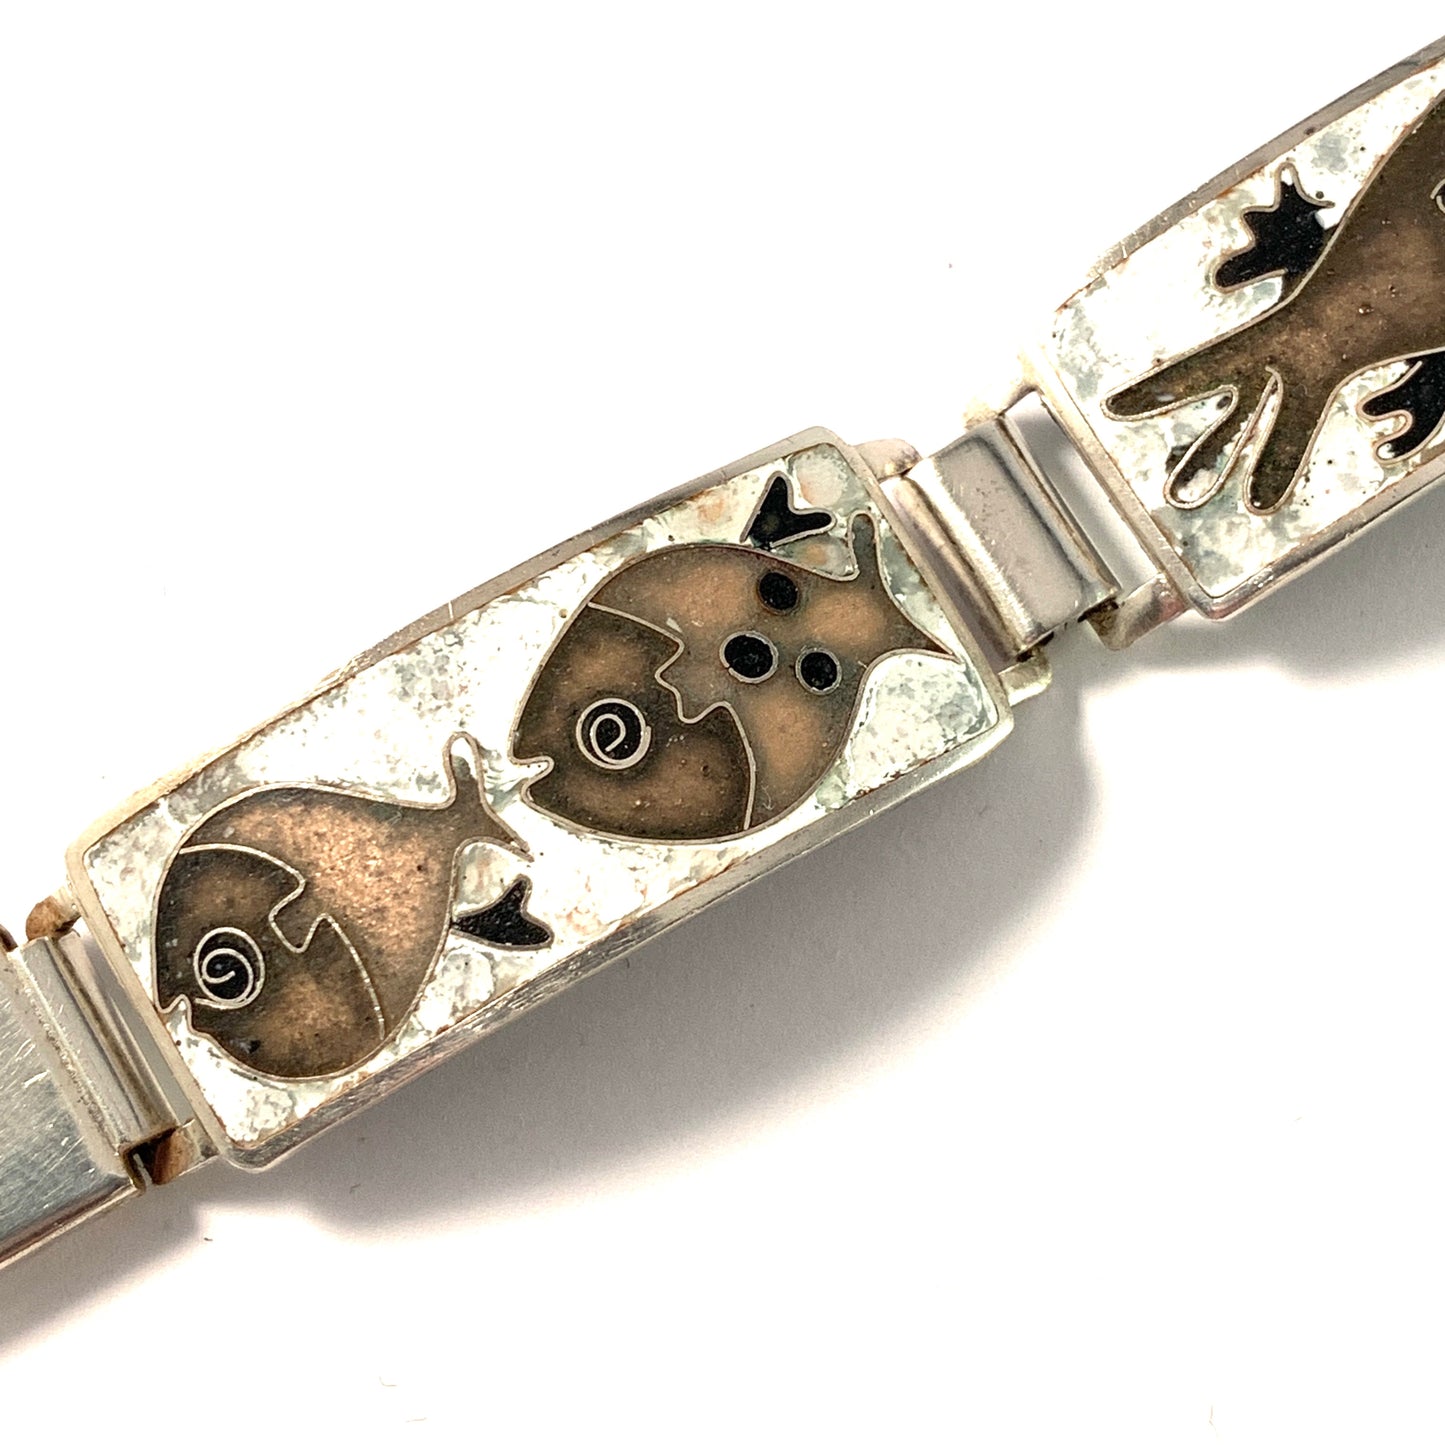 Perli Werkstatte, Germany 1950s. Enamel Copper Link Fish Bracelet.